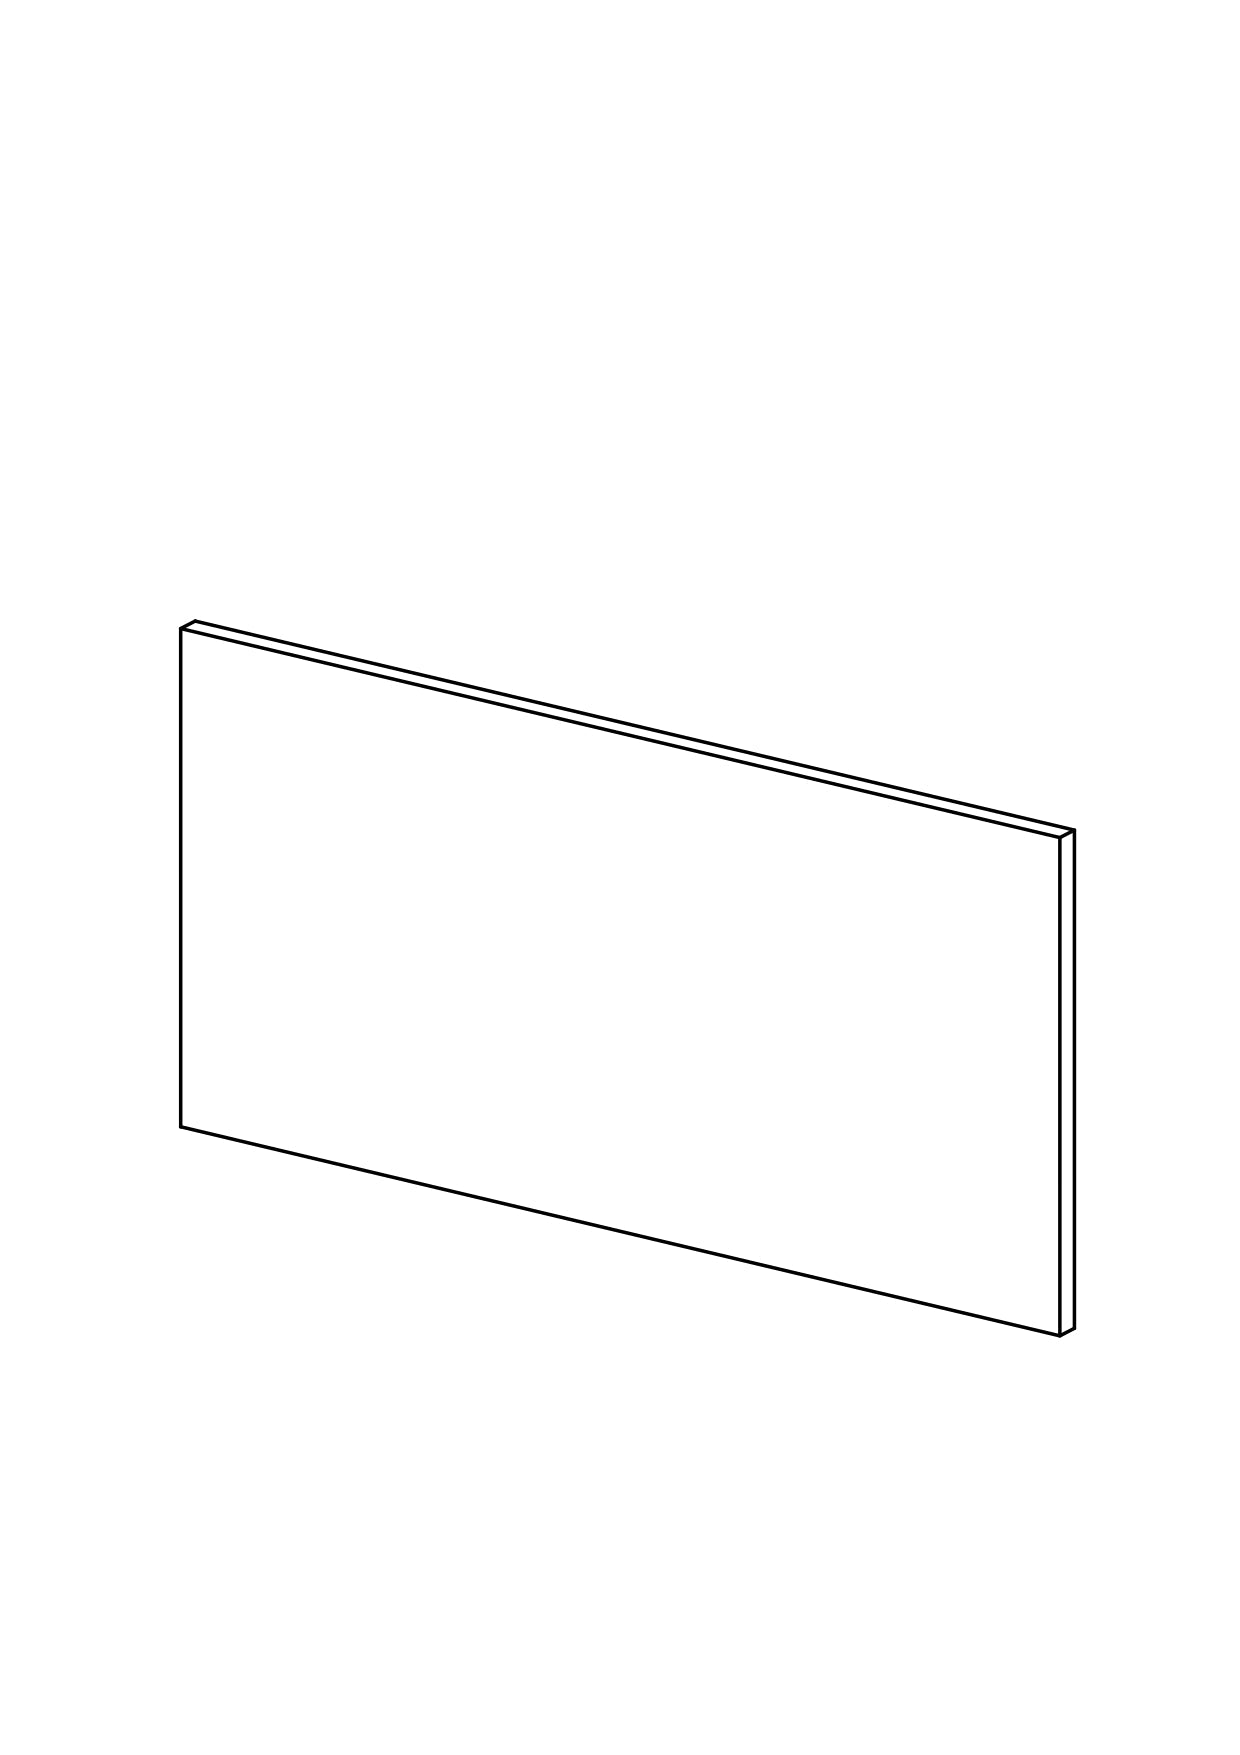 180x90 - Cover Panel - Plain - Timber Veneer - METOD